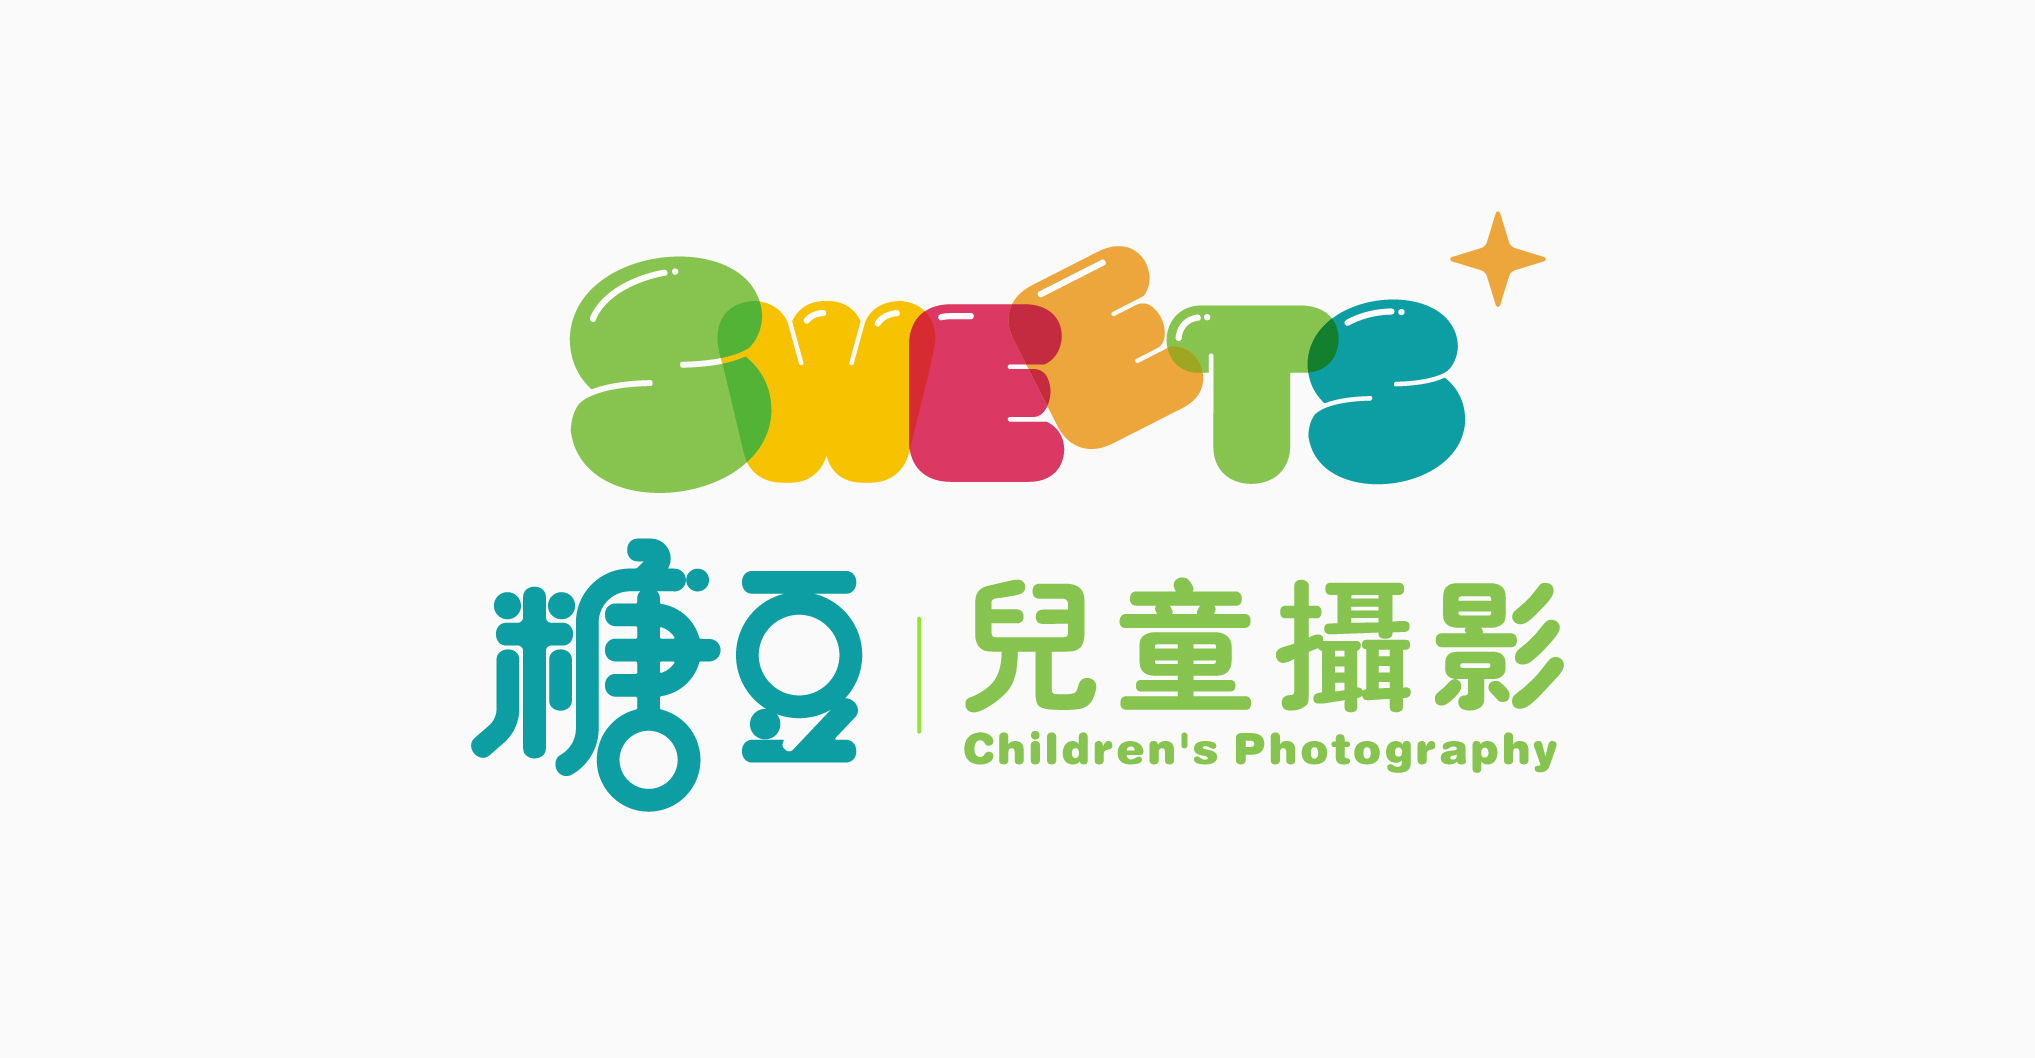 糖豆-儿童摄影品牌设计 儿童摄影品牌设计 第2张